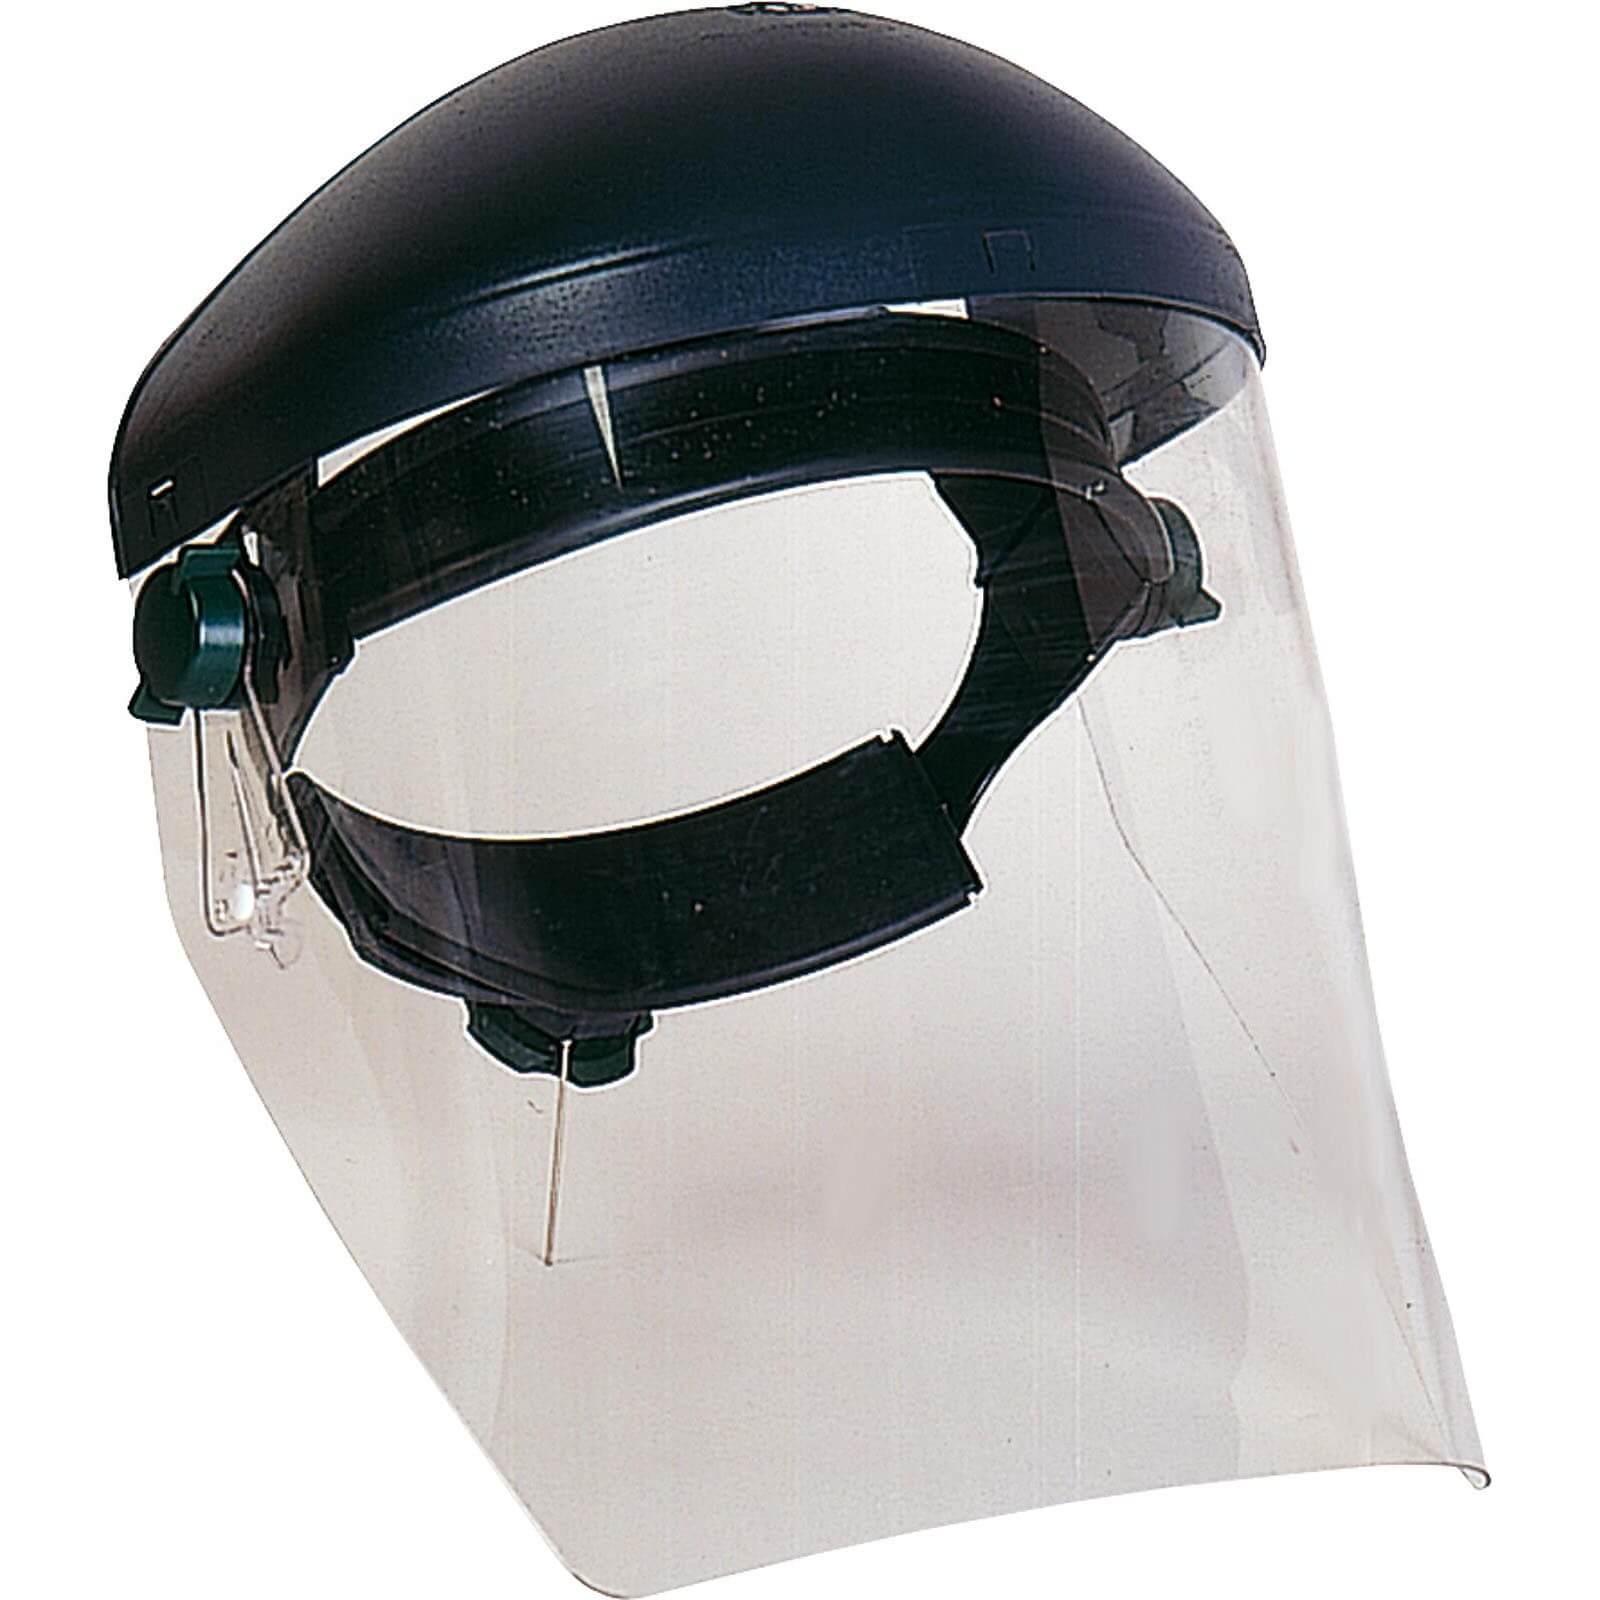 Honeywell Gesichtsschutz T10 Schirm - Schutzhaube - Sichtschutz - Spritzschutz von Honeywell